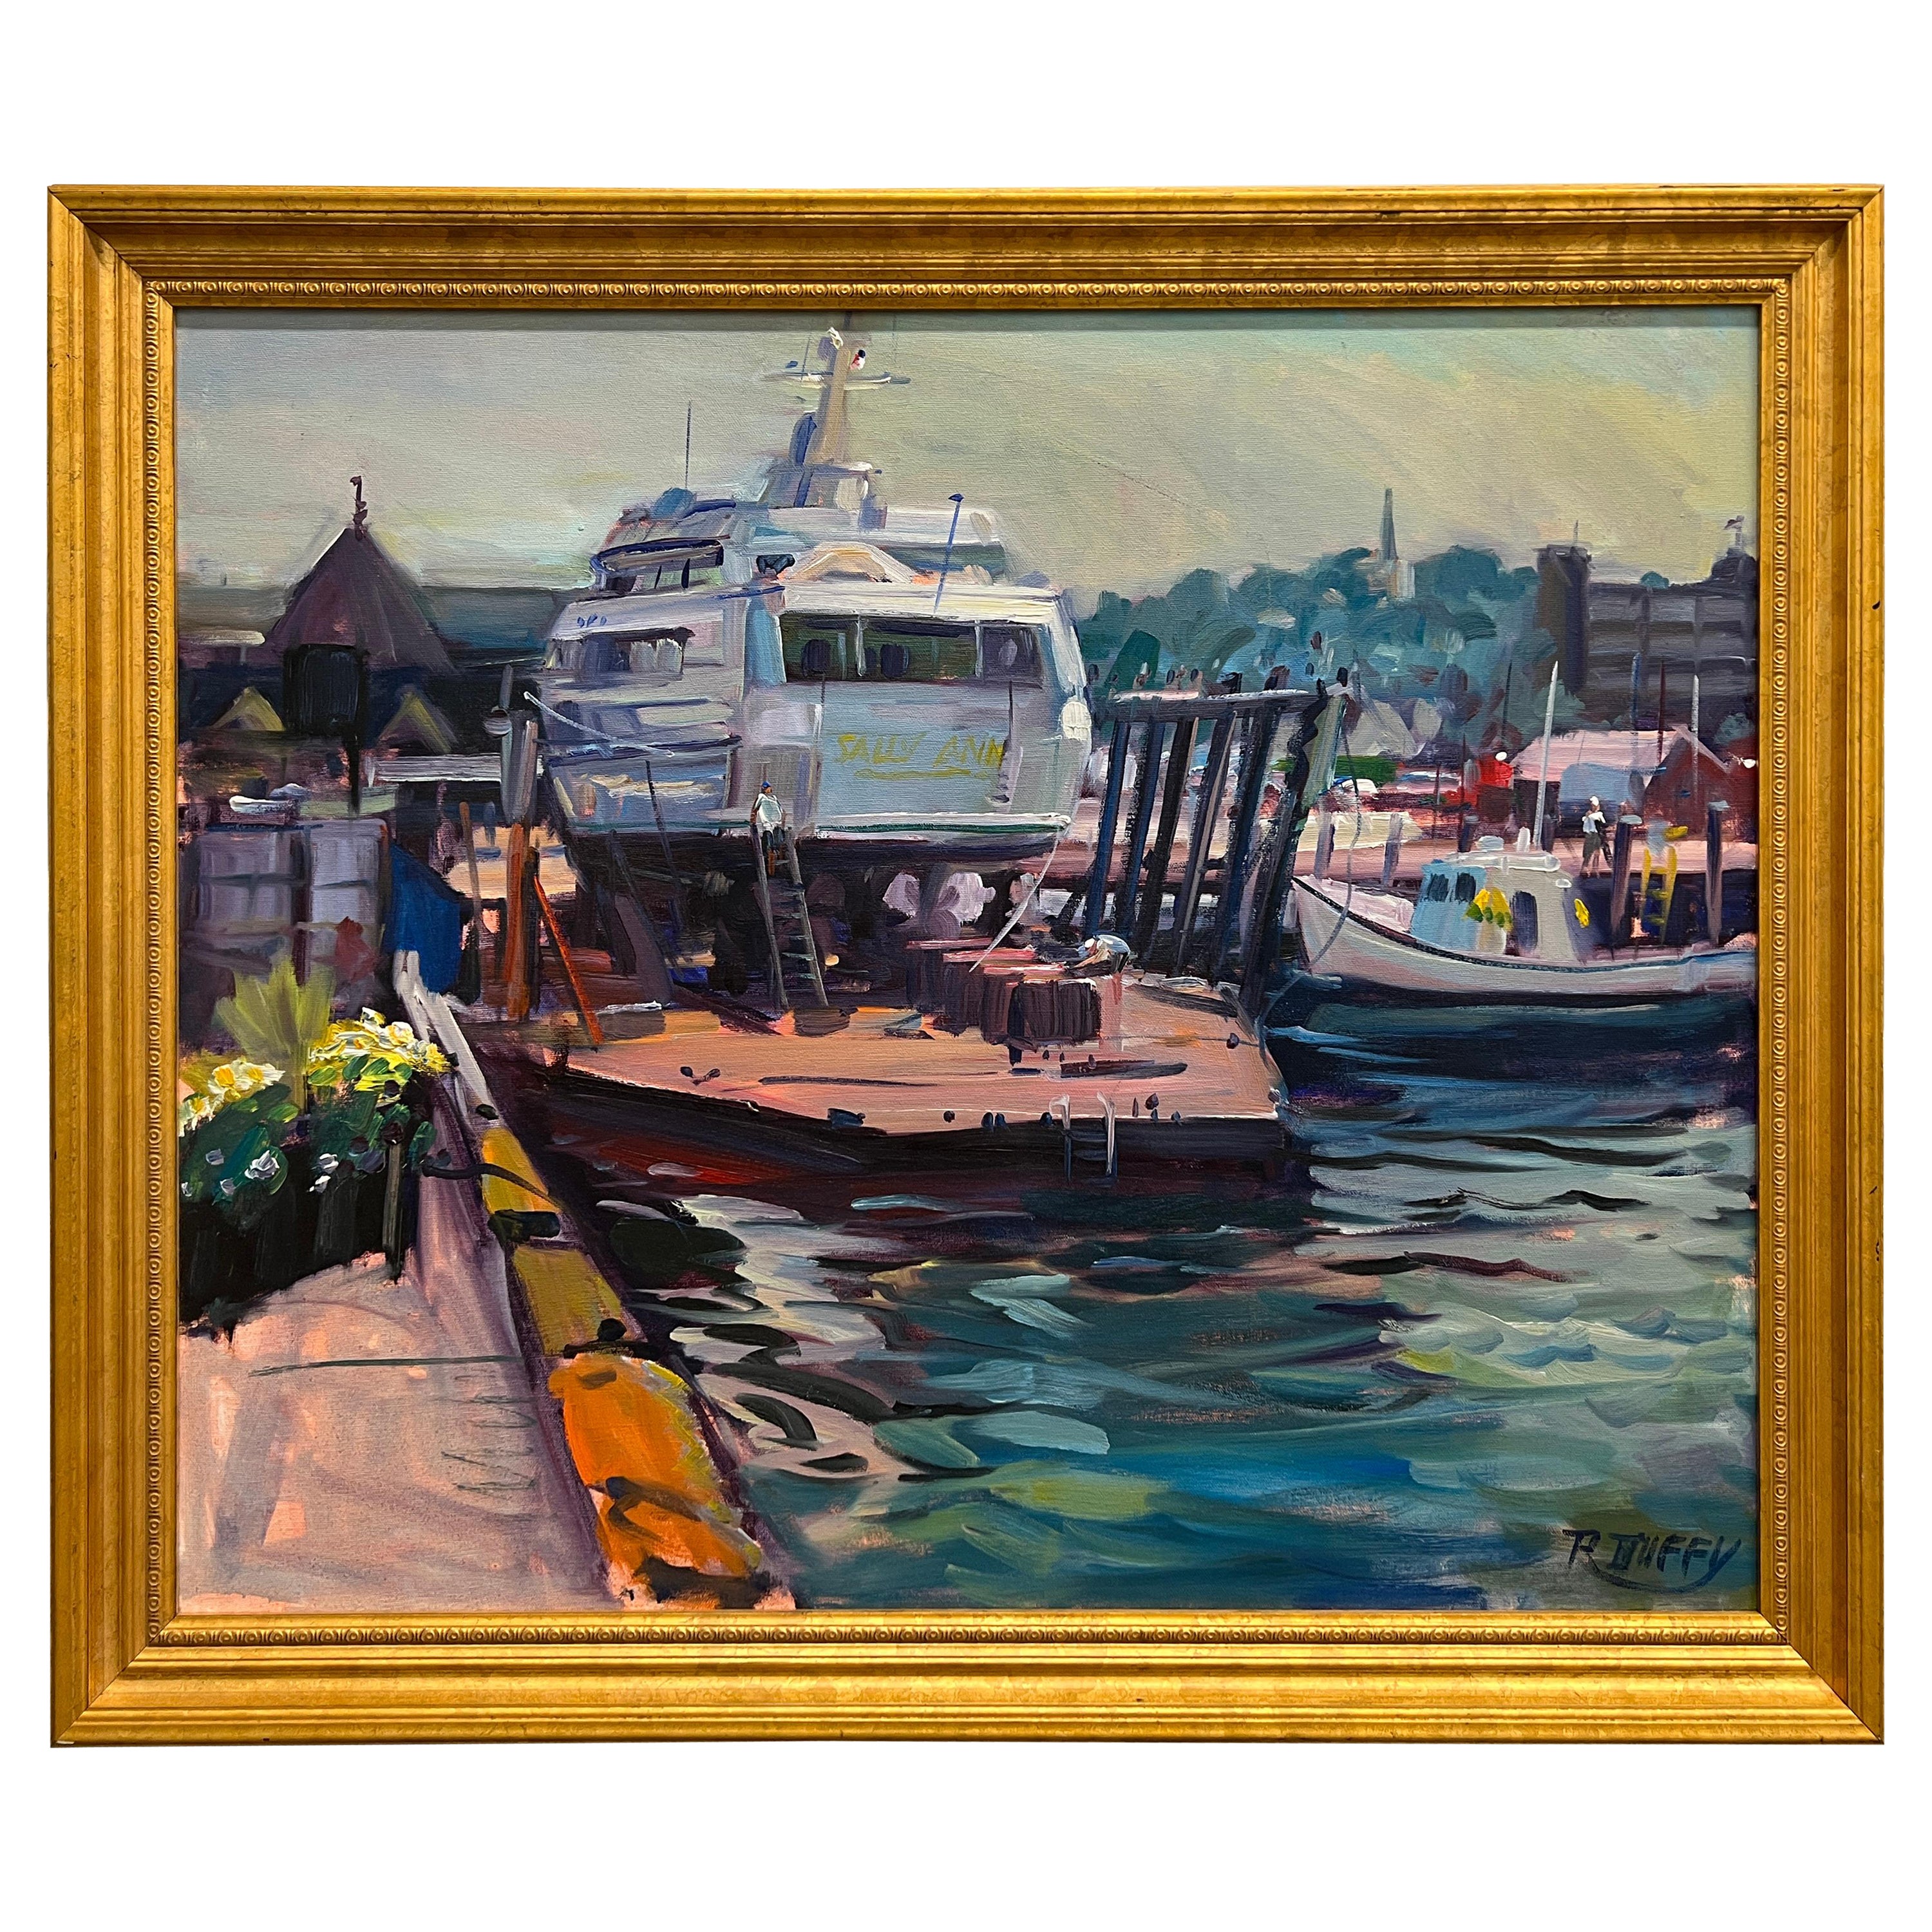 Robert Duffy (américain, 1928-2015), huile sur toile impressionniste du port de Newport 